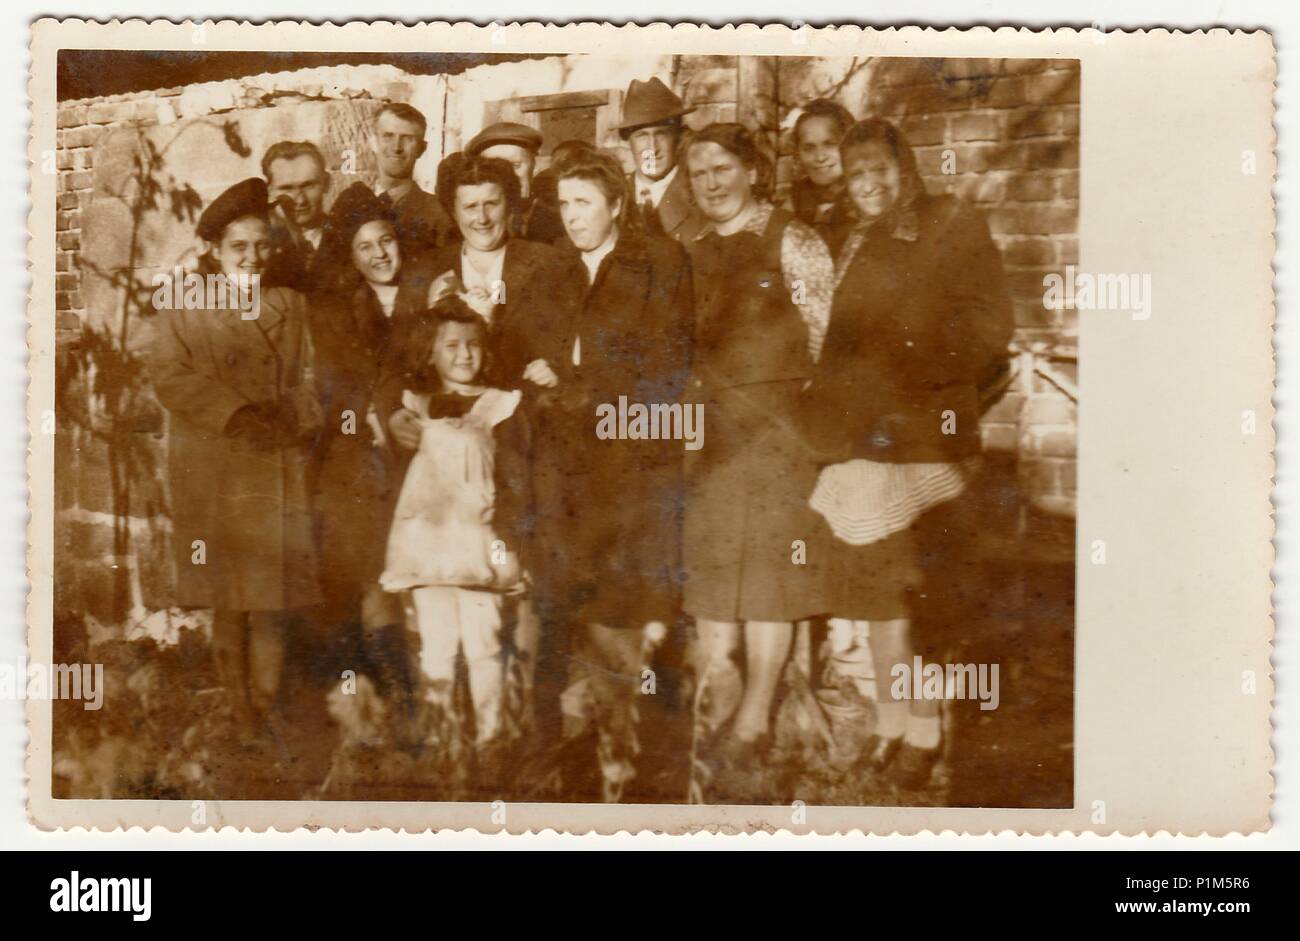 Die tschechoslowakische Republik - circa 1950s: Vintage Foto zeigt eine große Familie im Freien dar. Schwarz & Weiß antik Fotografie. Stockfoto